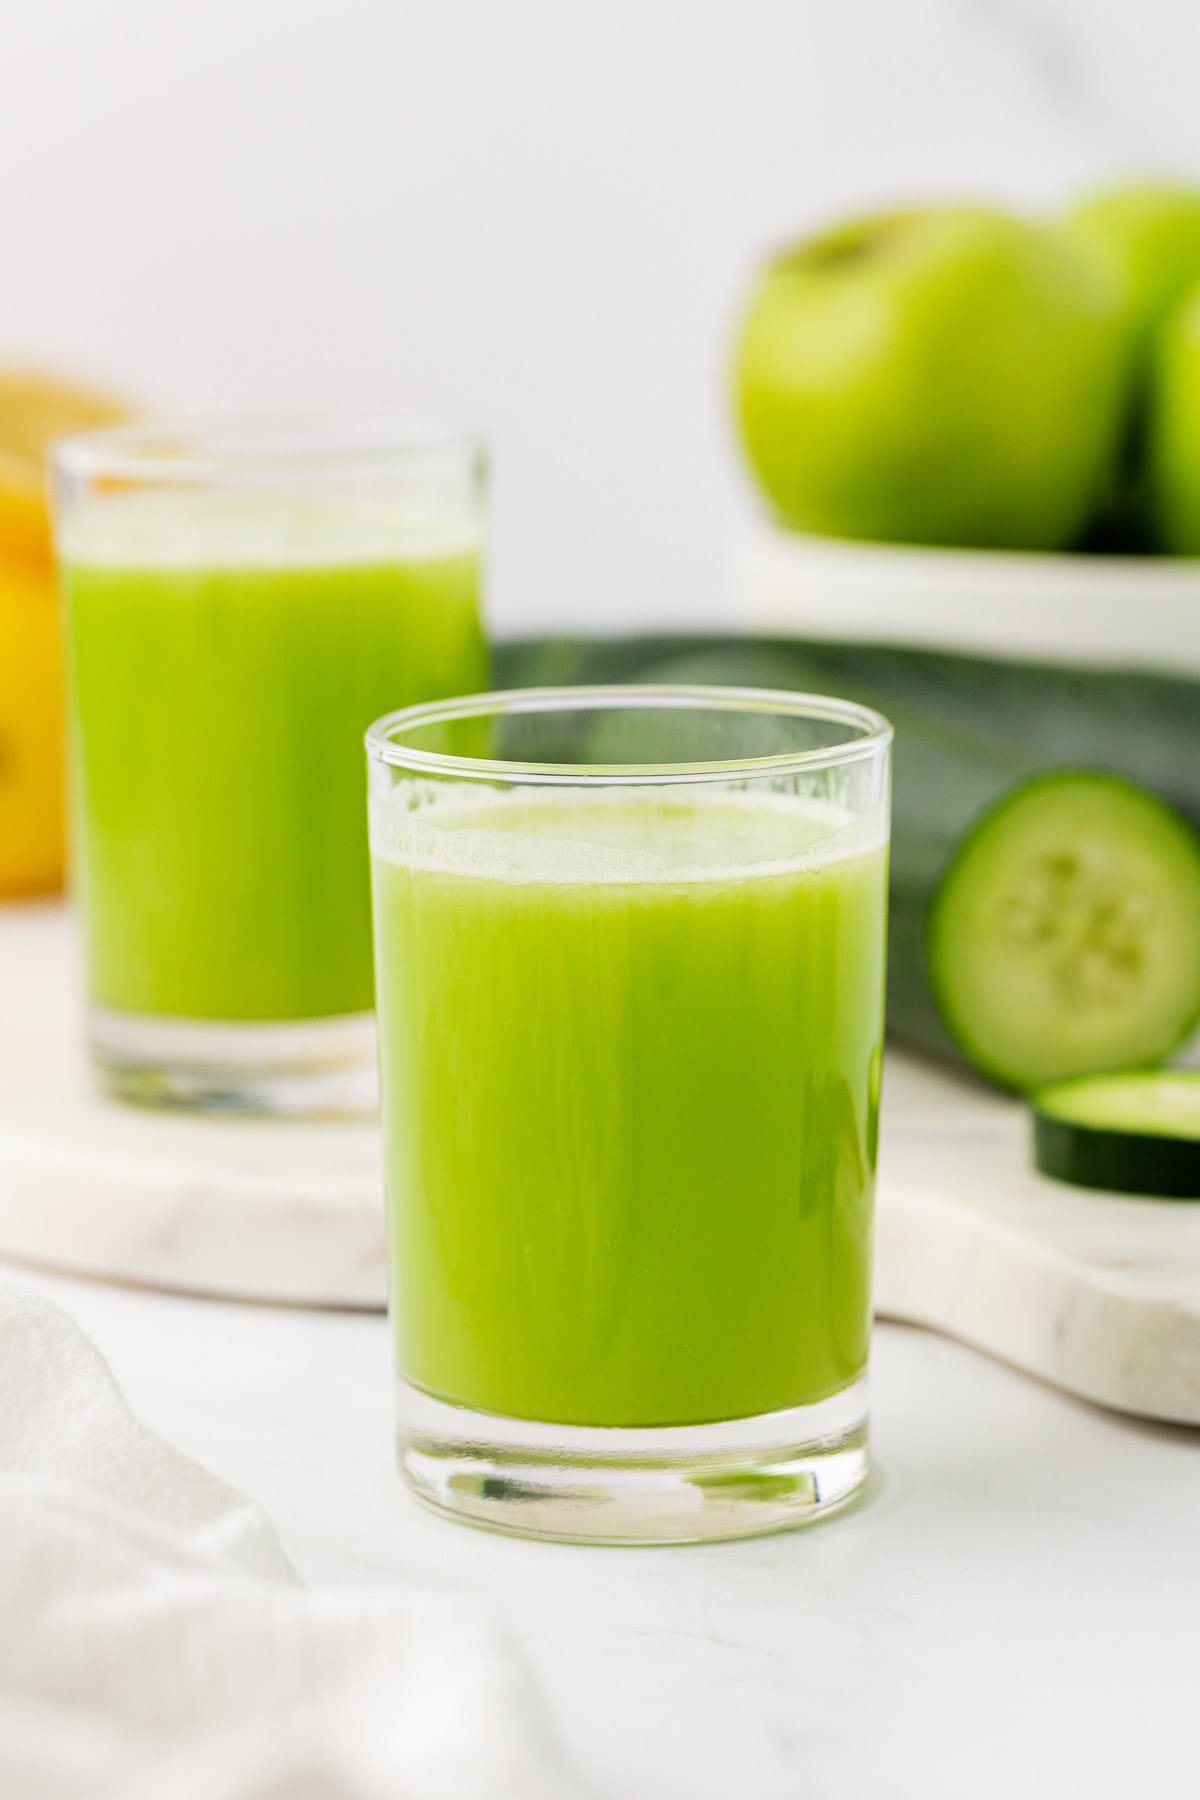 cucumber juice in a glass